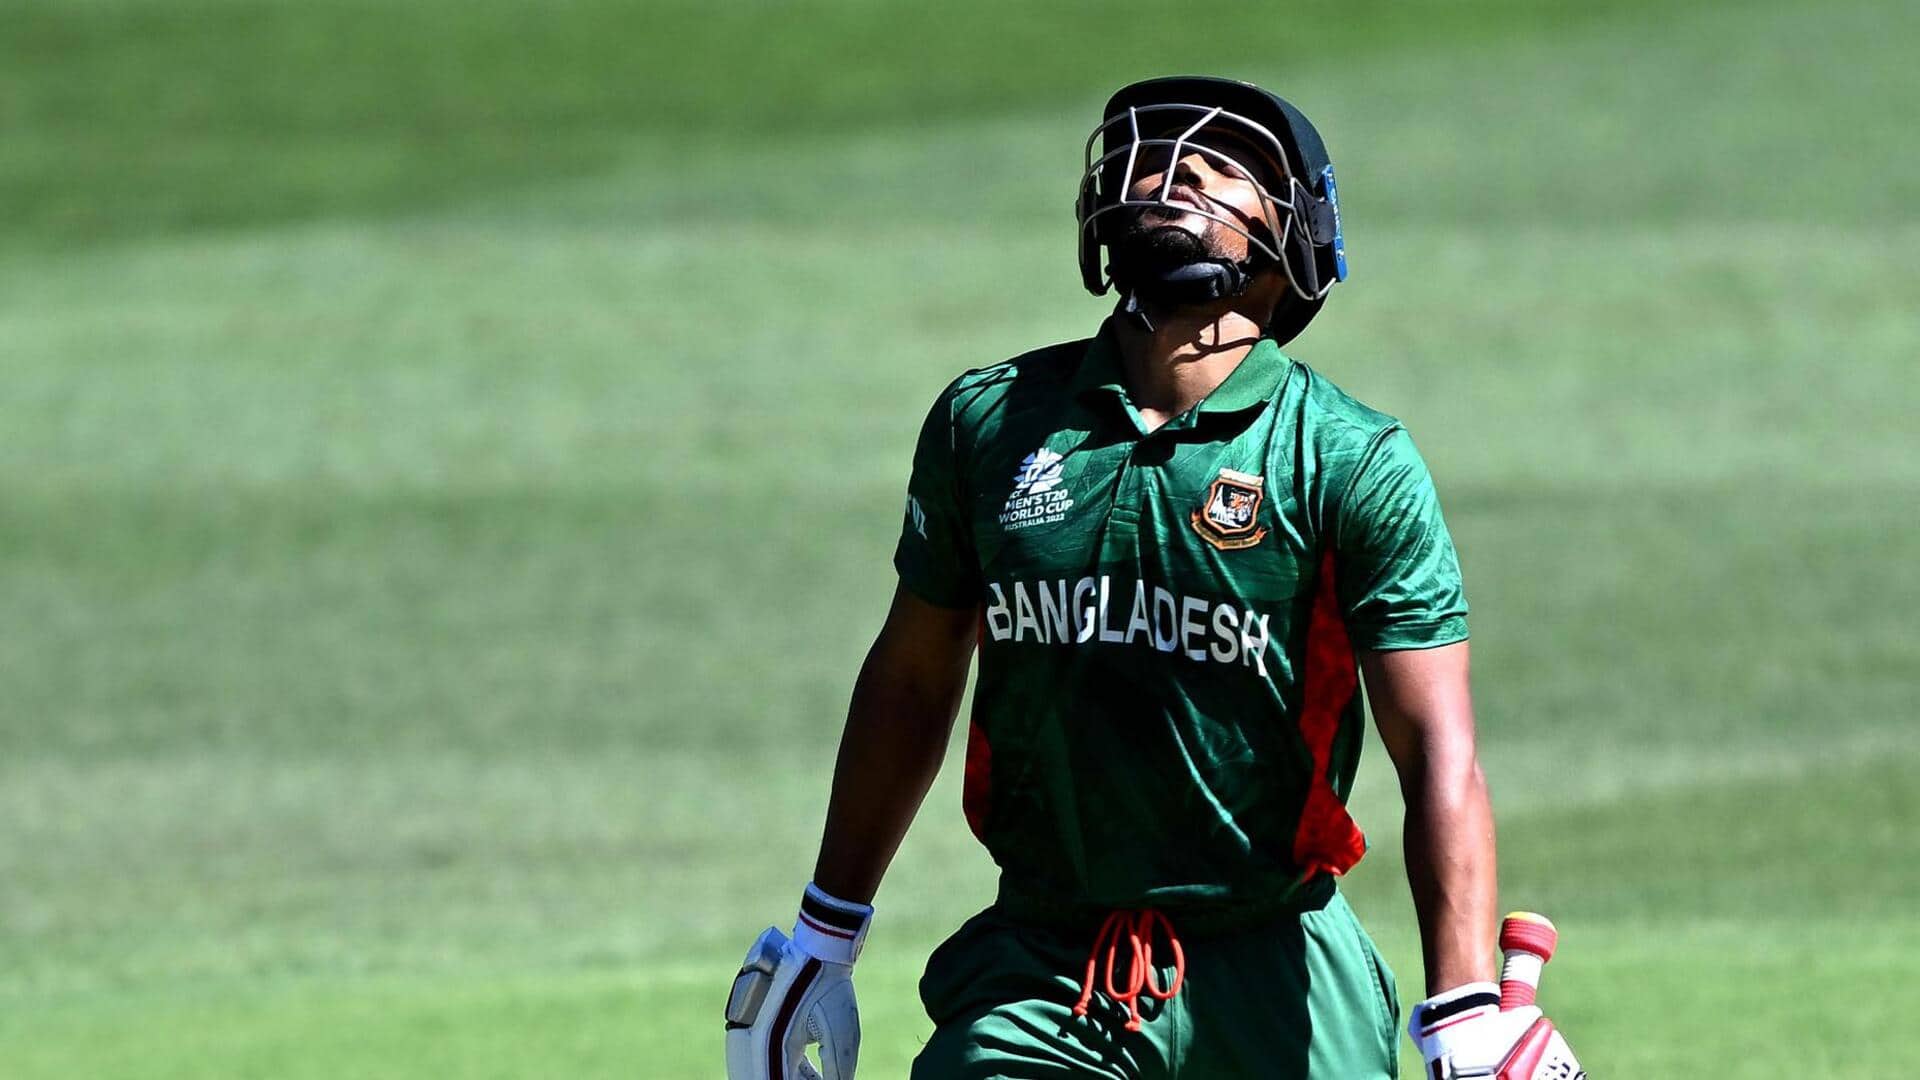 बांग्लादेश बनाम श्रीलंका: नजमुल हसन शांतो विश्व कप में अपने पहले शतक से चूके, जानिए आंकड़े